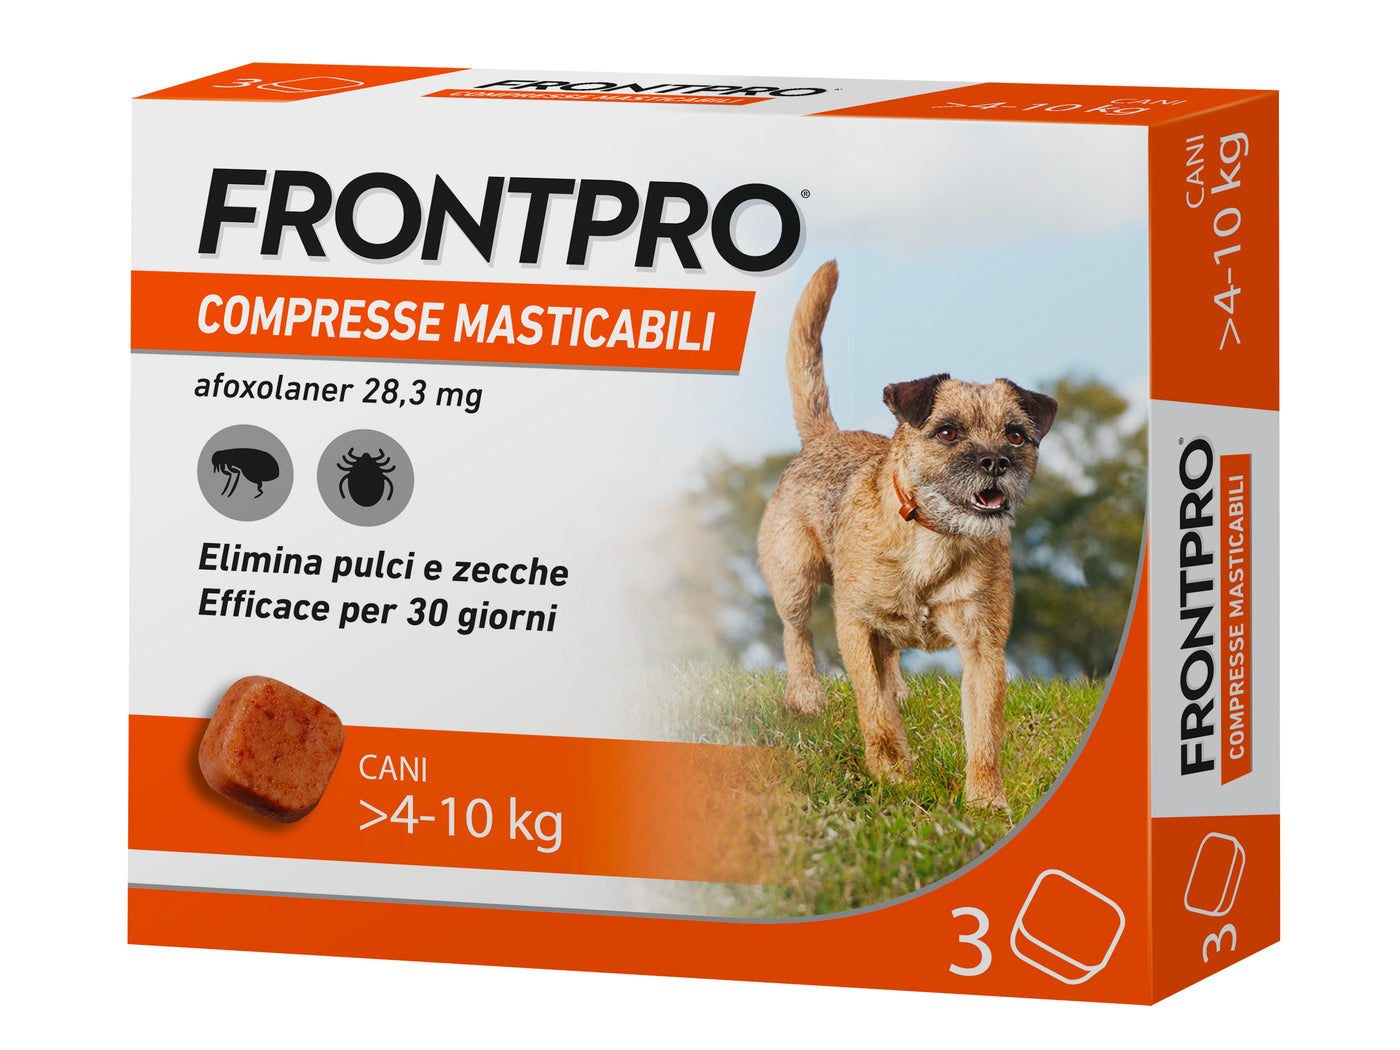 Frontpro 3 cpr 4 - 10 kg compresse antipulci per cane